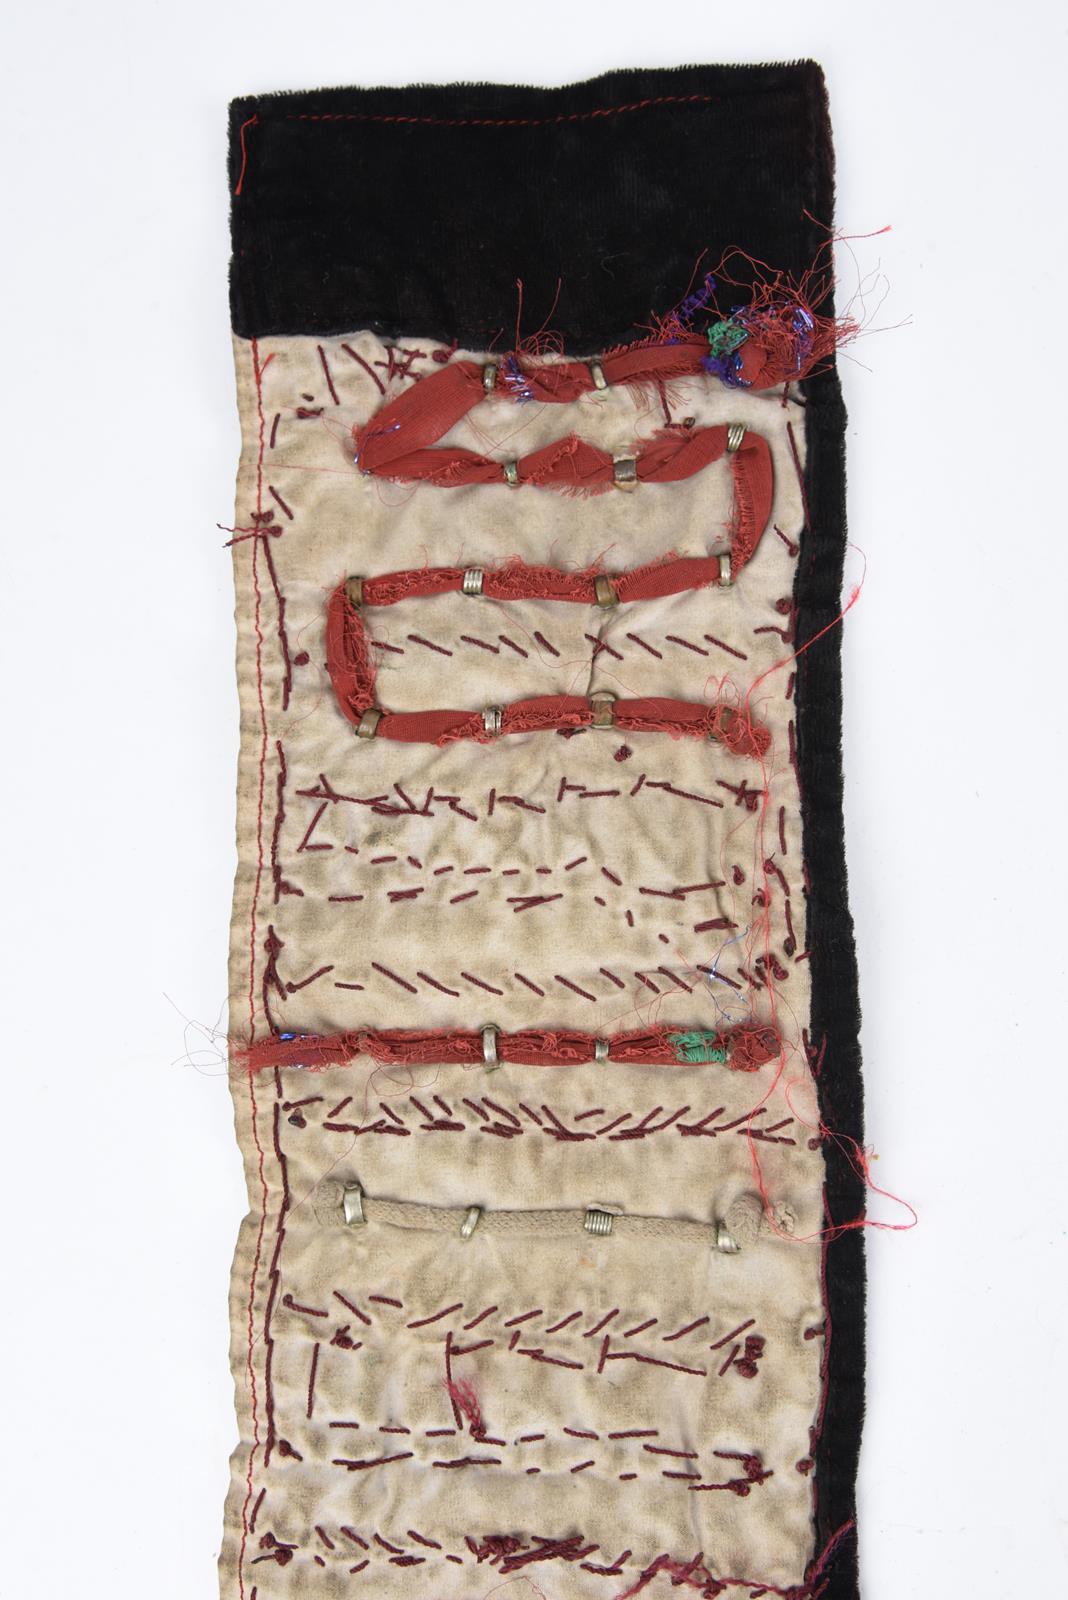 λA Bedouin amulet chest ornament cloth with numerous sewn on amulets and beads, 62cm long, and three - Image 21 of 27